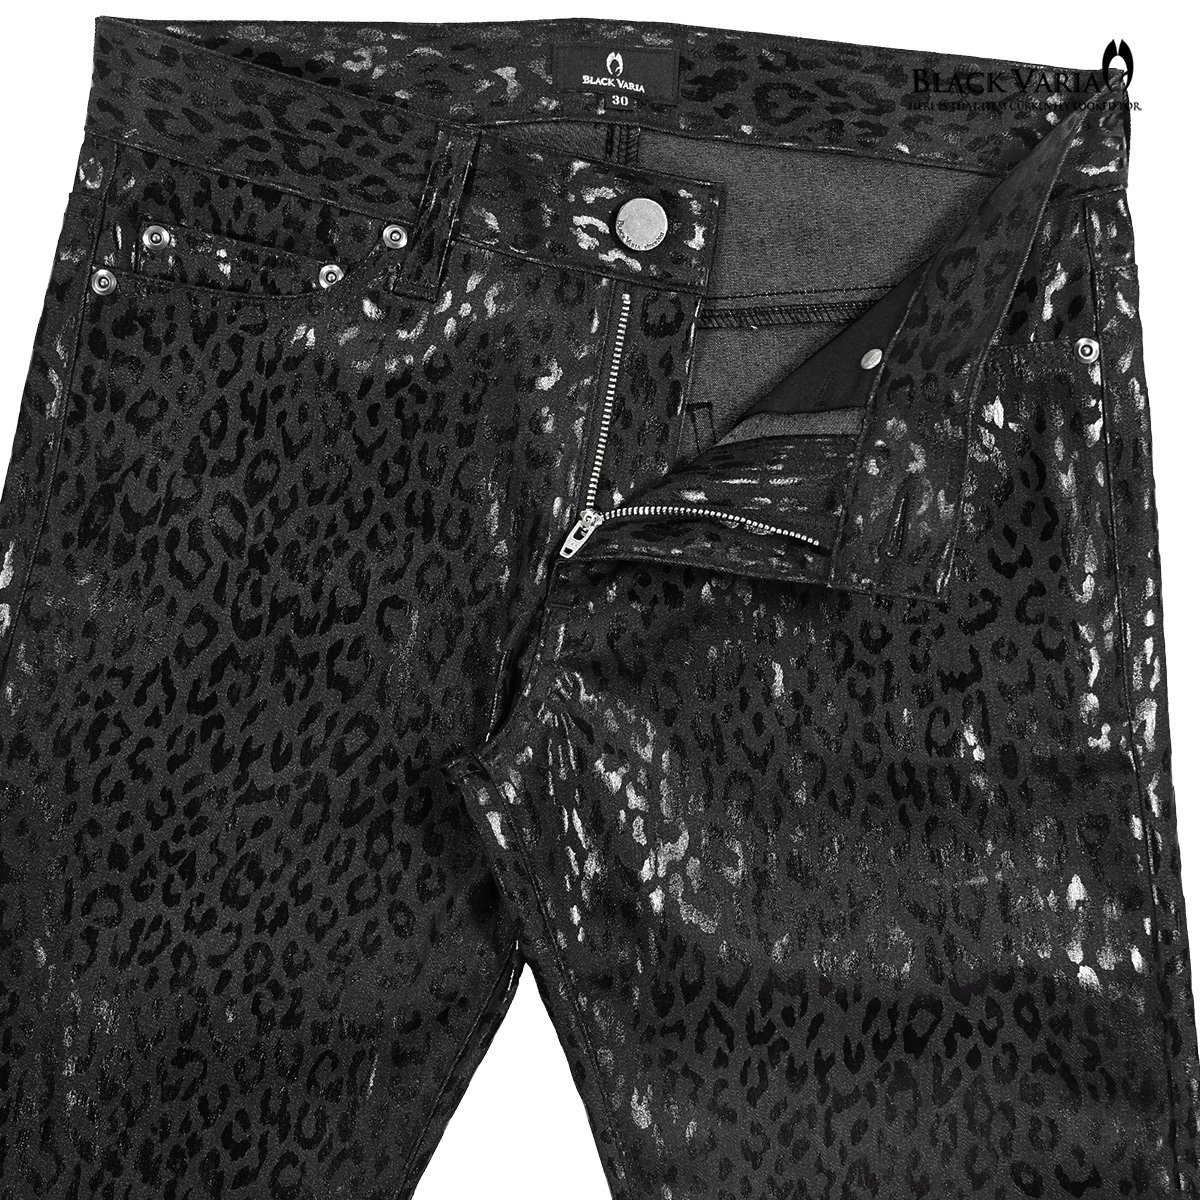 212751-bk BlackVaria ロングパンツ 箔プリント 豹柄 ブーツカット 日本製 ローライズ ボトムス シューカット メンズ(ブラック黒) 3L33 _画像5